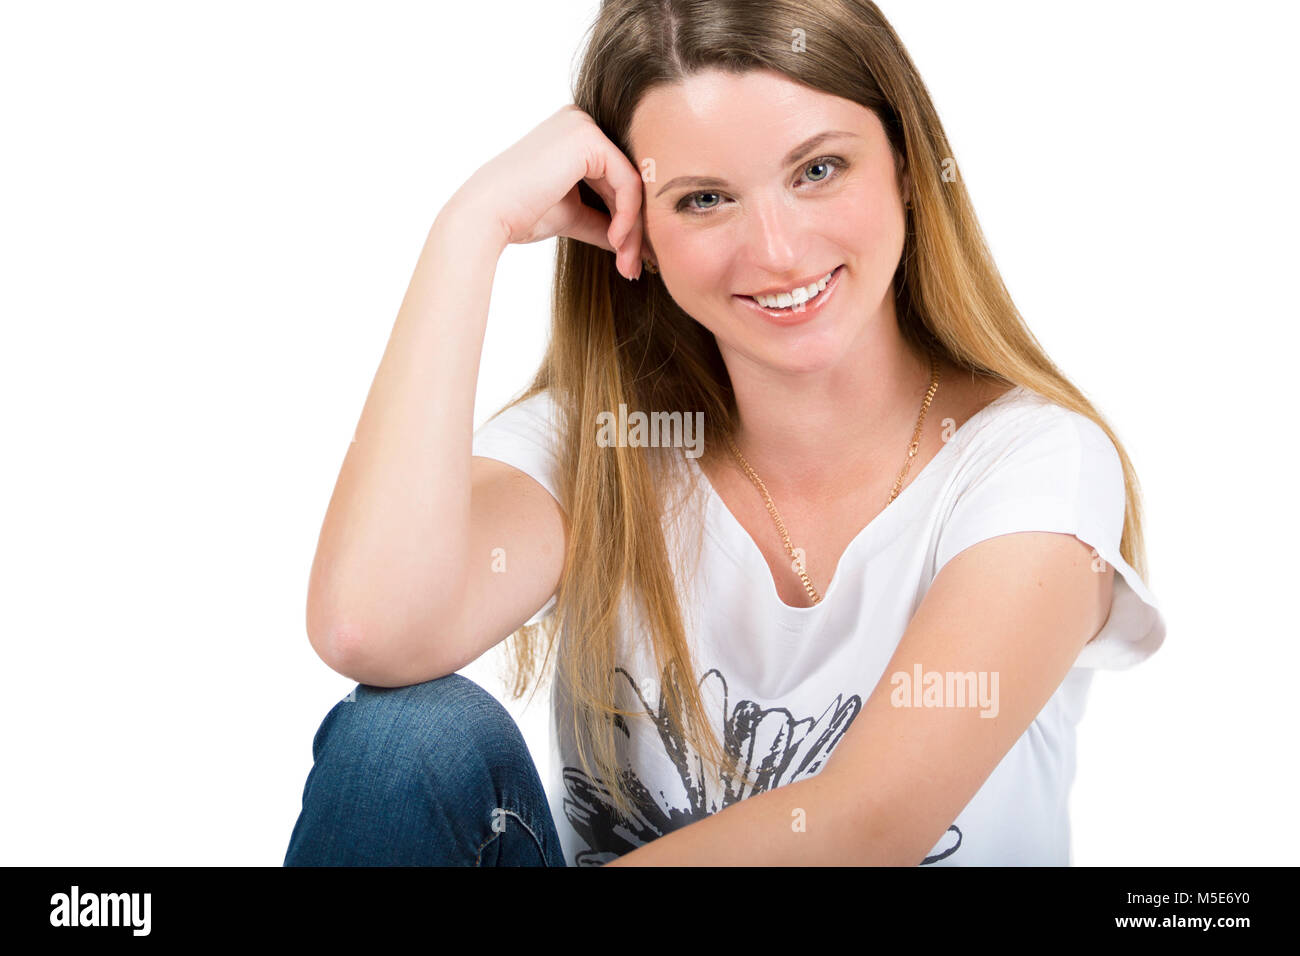 Ritratto di un bellissimo allegro giovane donna su sfondo bianco Foto Stock